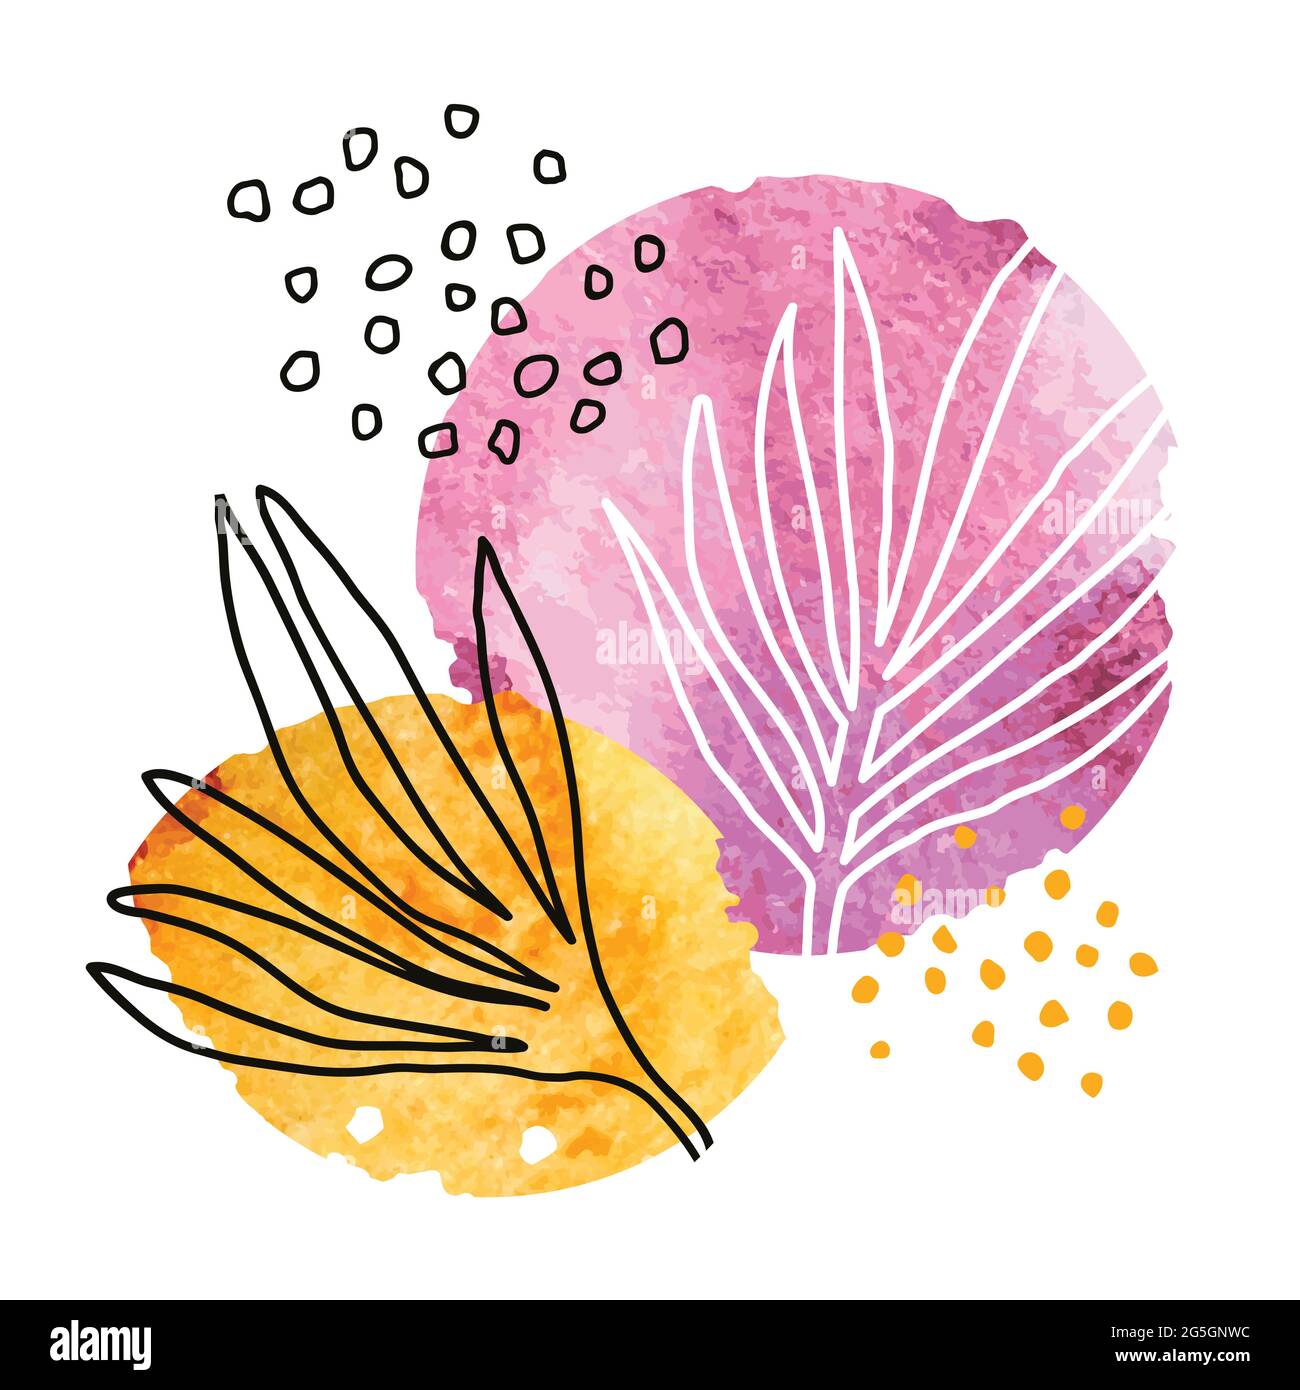 Fondo artístico abstracto con manchas de acuarela y hojas tropicales dibujadas a mano. Arte minimalista creativo para decoración de paredes, postales o folletos c Ilustración del Vector